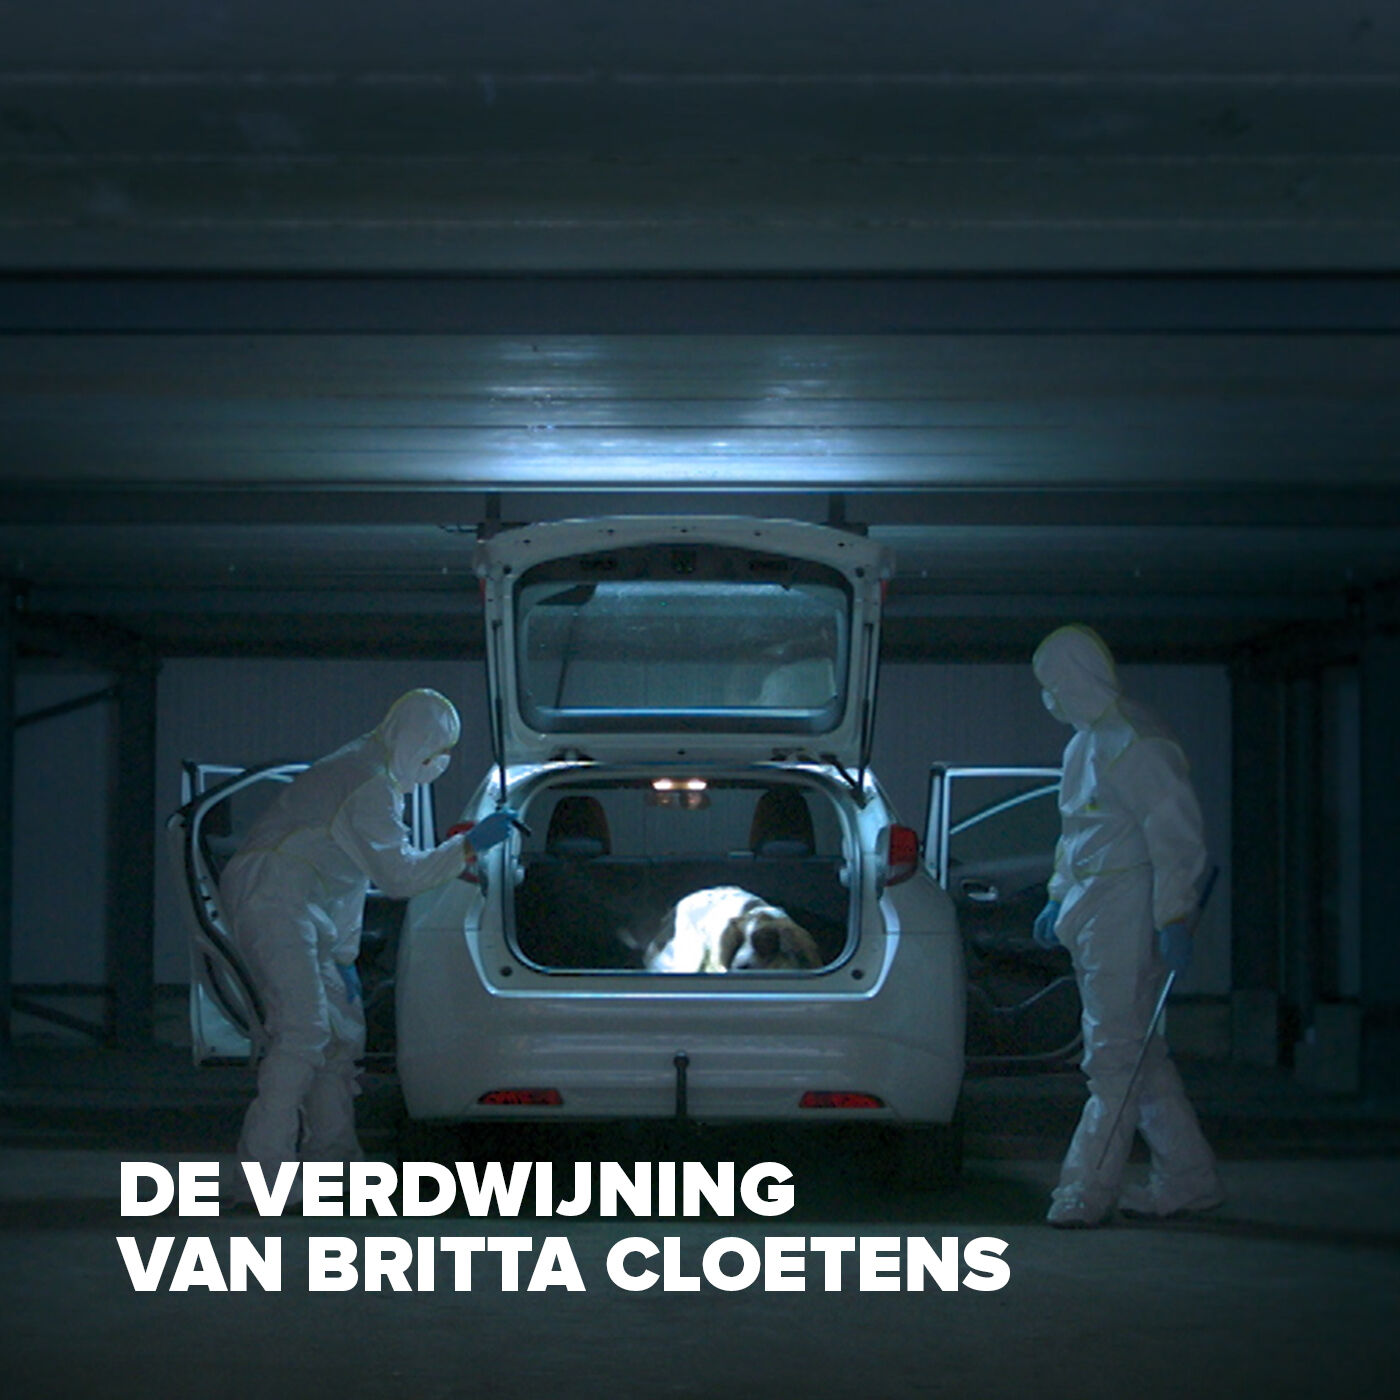 #1 Start van het onderzoek naar de verdwijning van Britta Cloetens